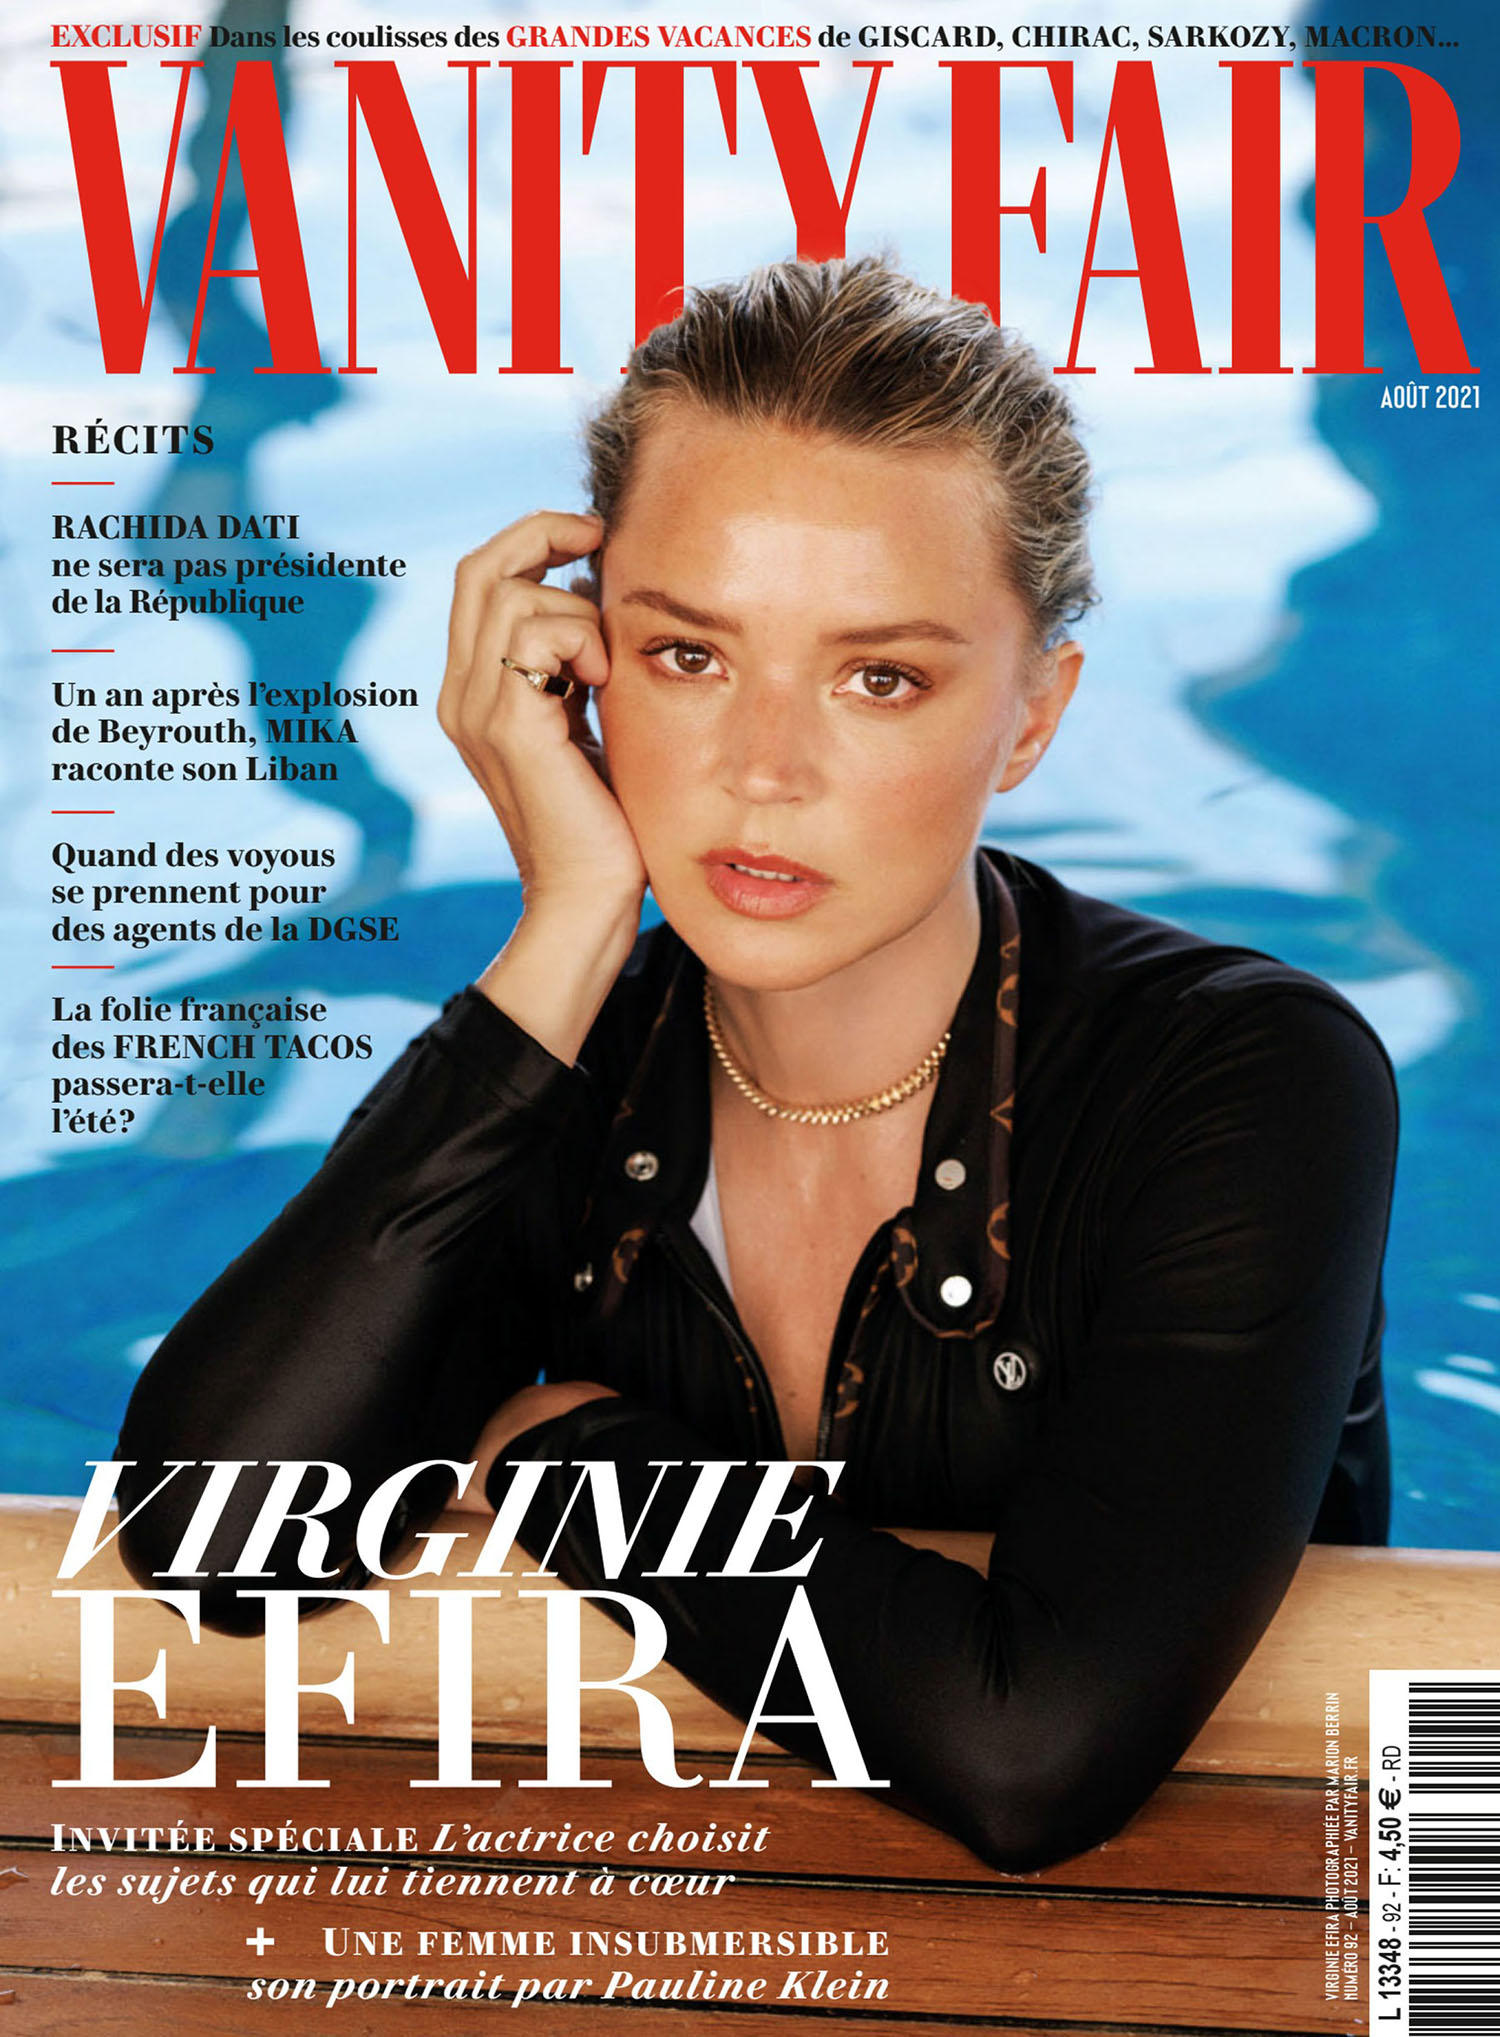 Virginie Efira covers Vanity Fair France August 2021 by Marion Berrin